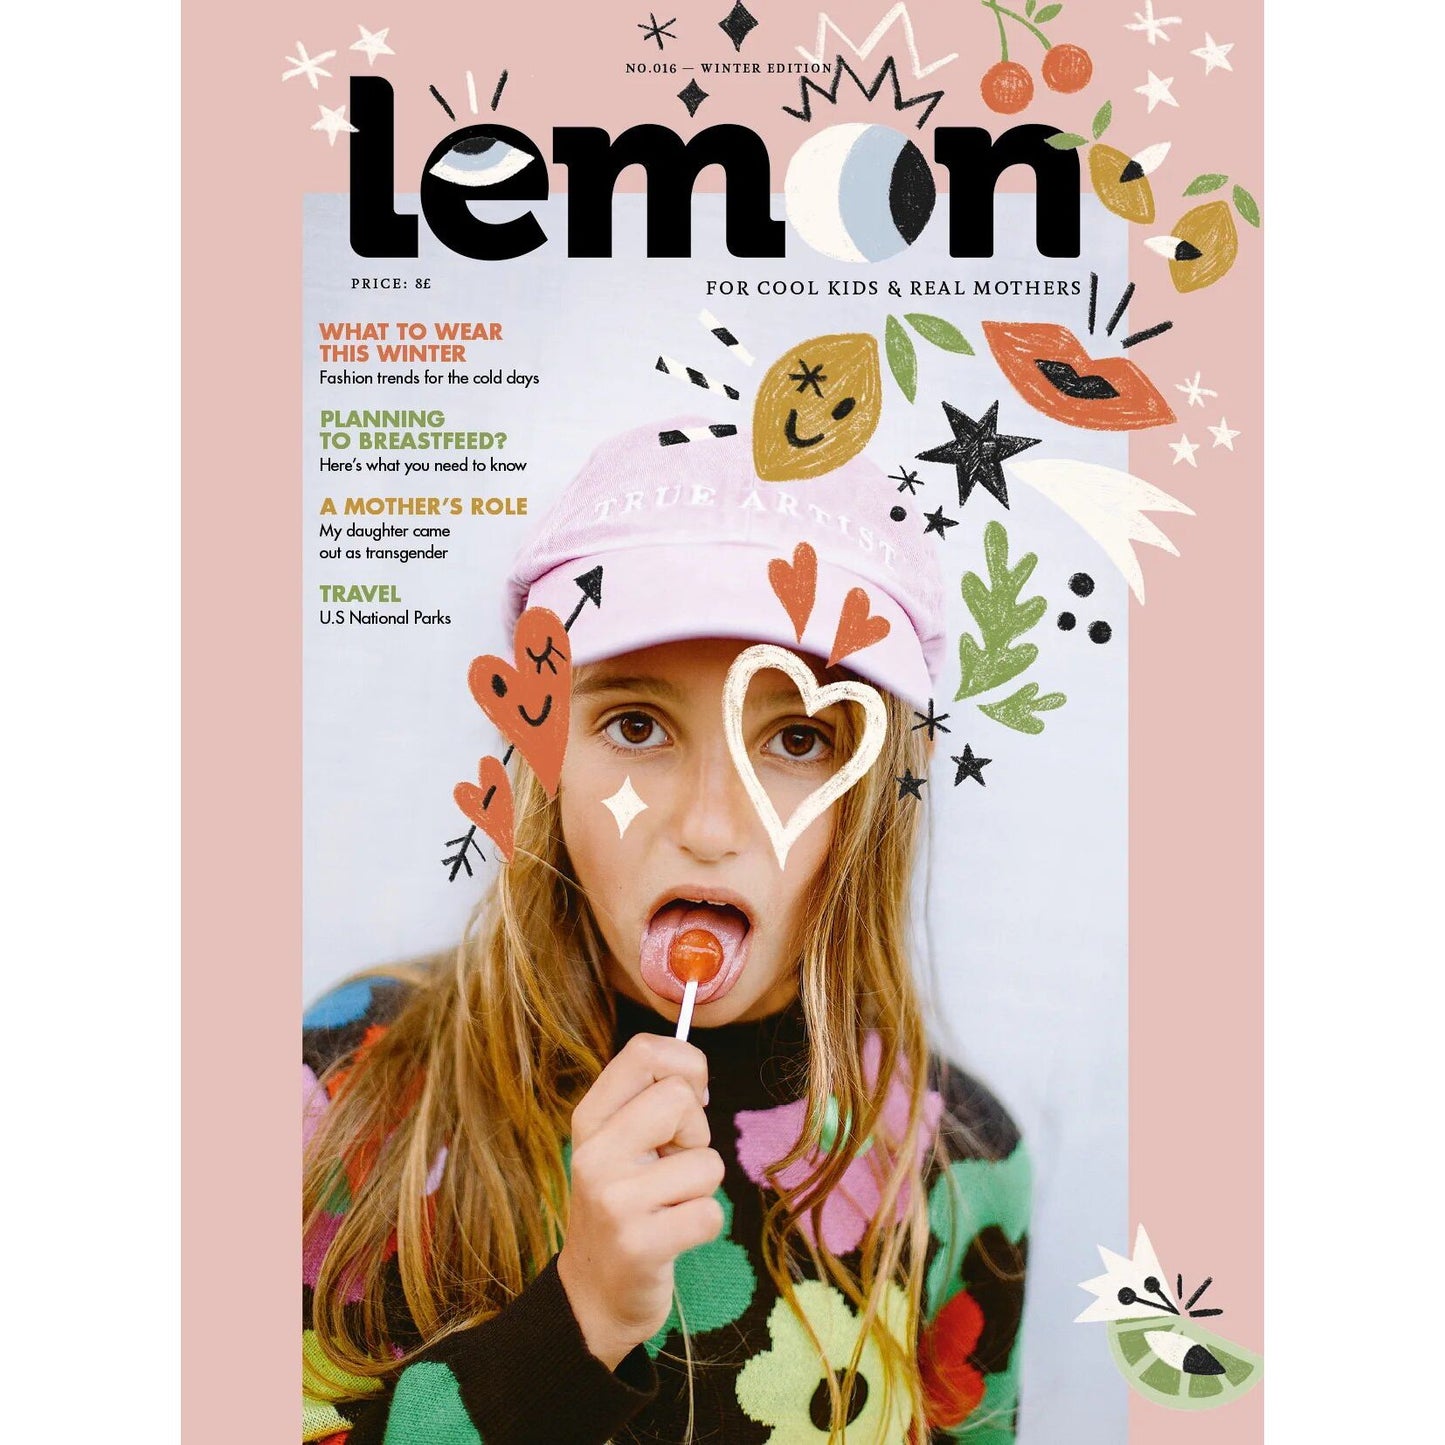 Lemon Mag #16